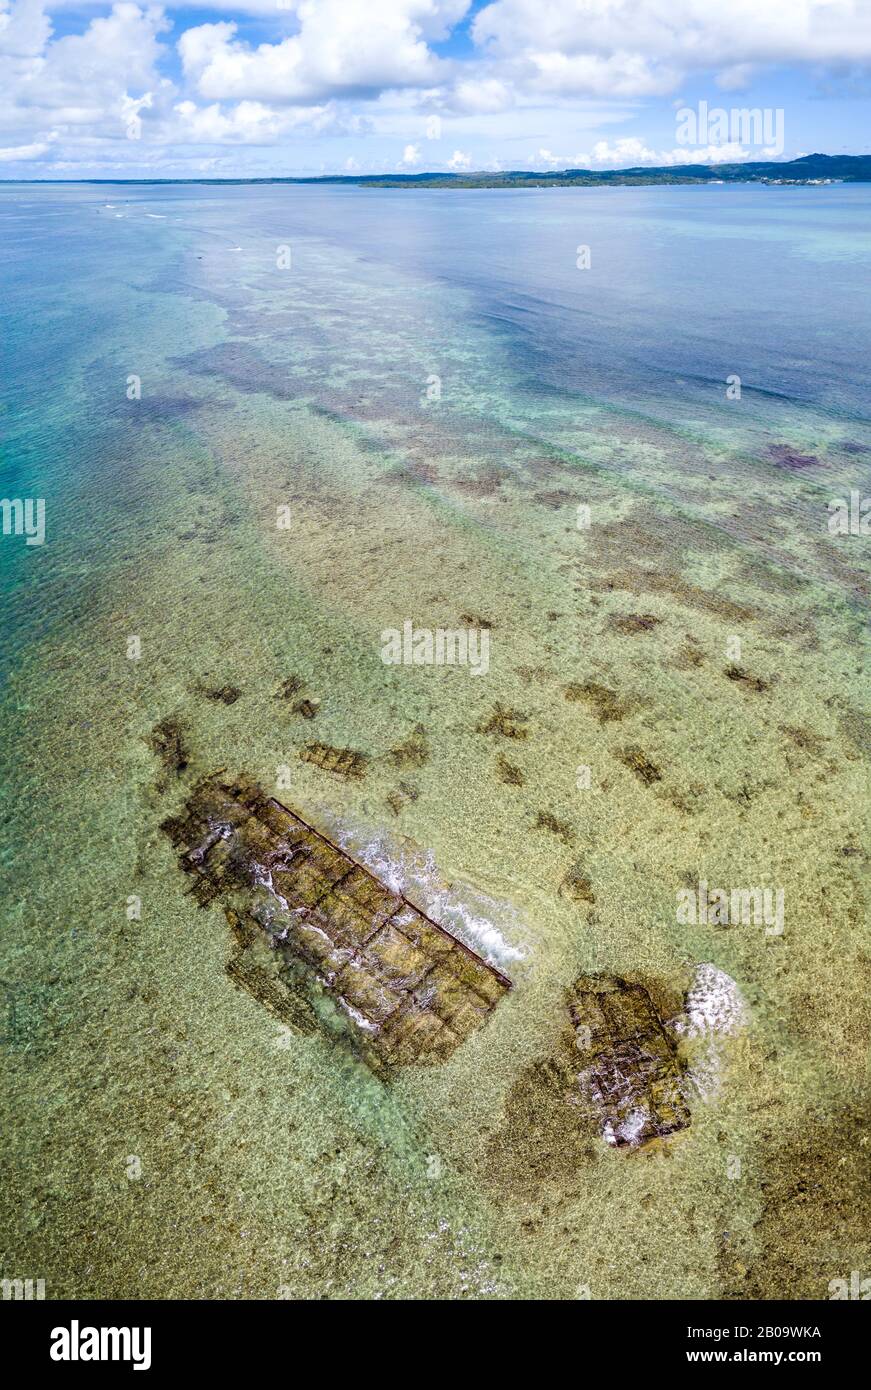 Una veduta aerea dei resti di un naufragio sulla barriera corallina esterna fuori dall'isola di Yap, Micronesia. Foto Stock